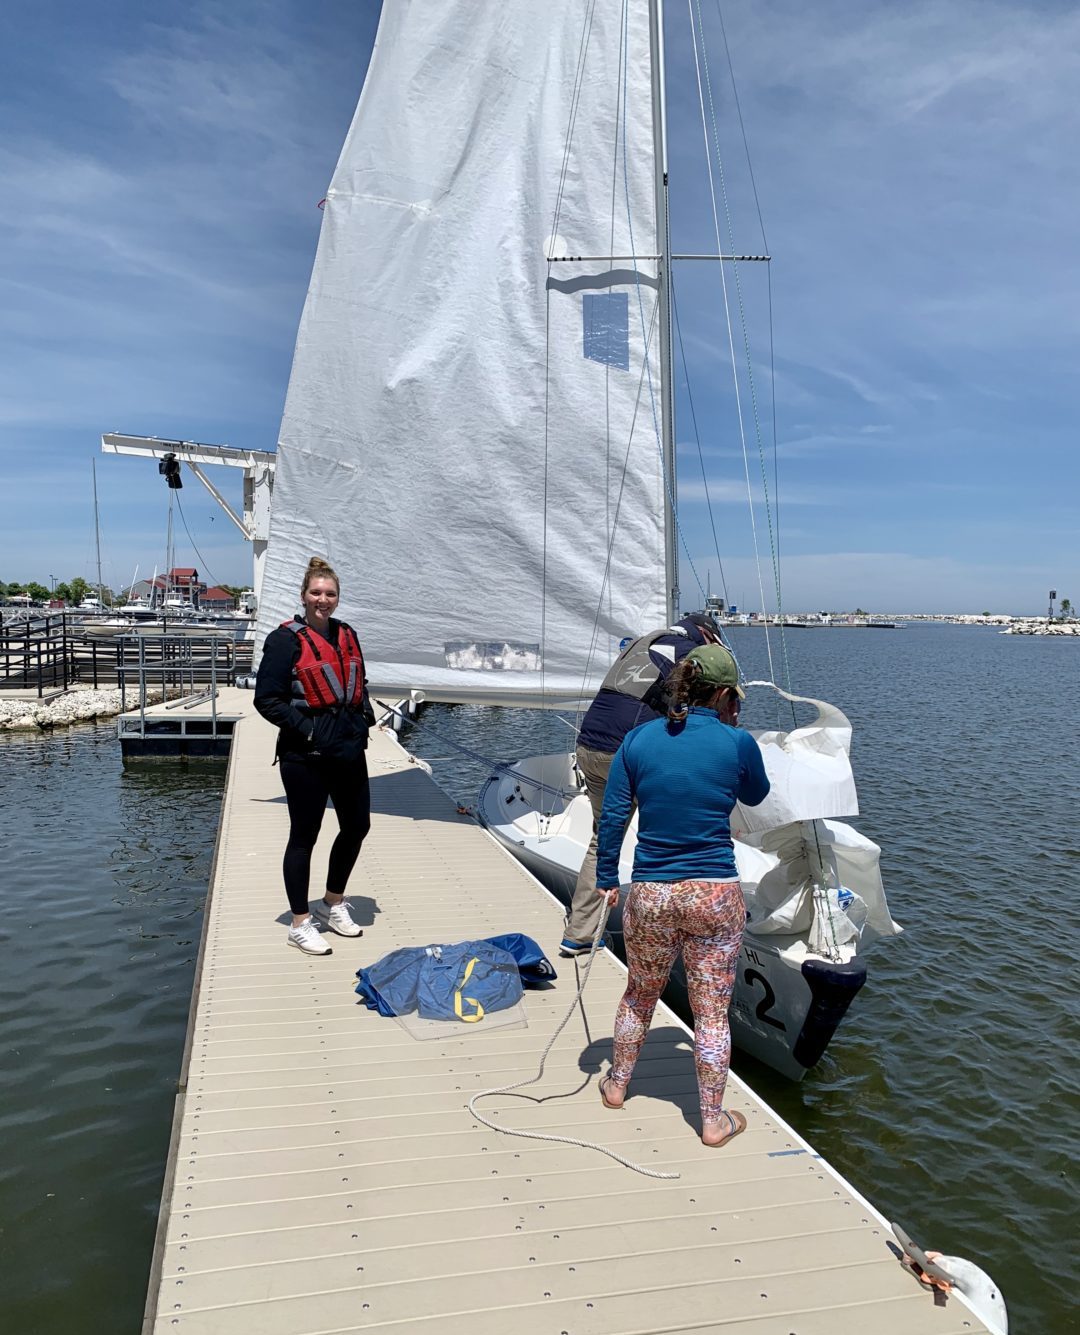 Rachel's sail lesson